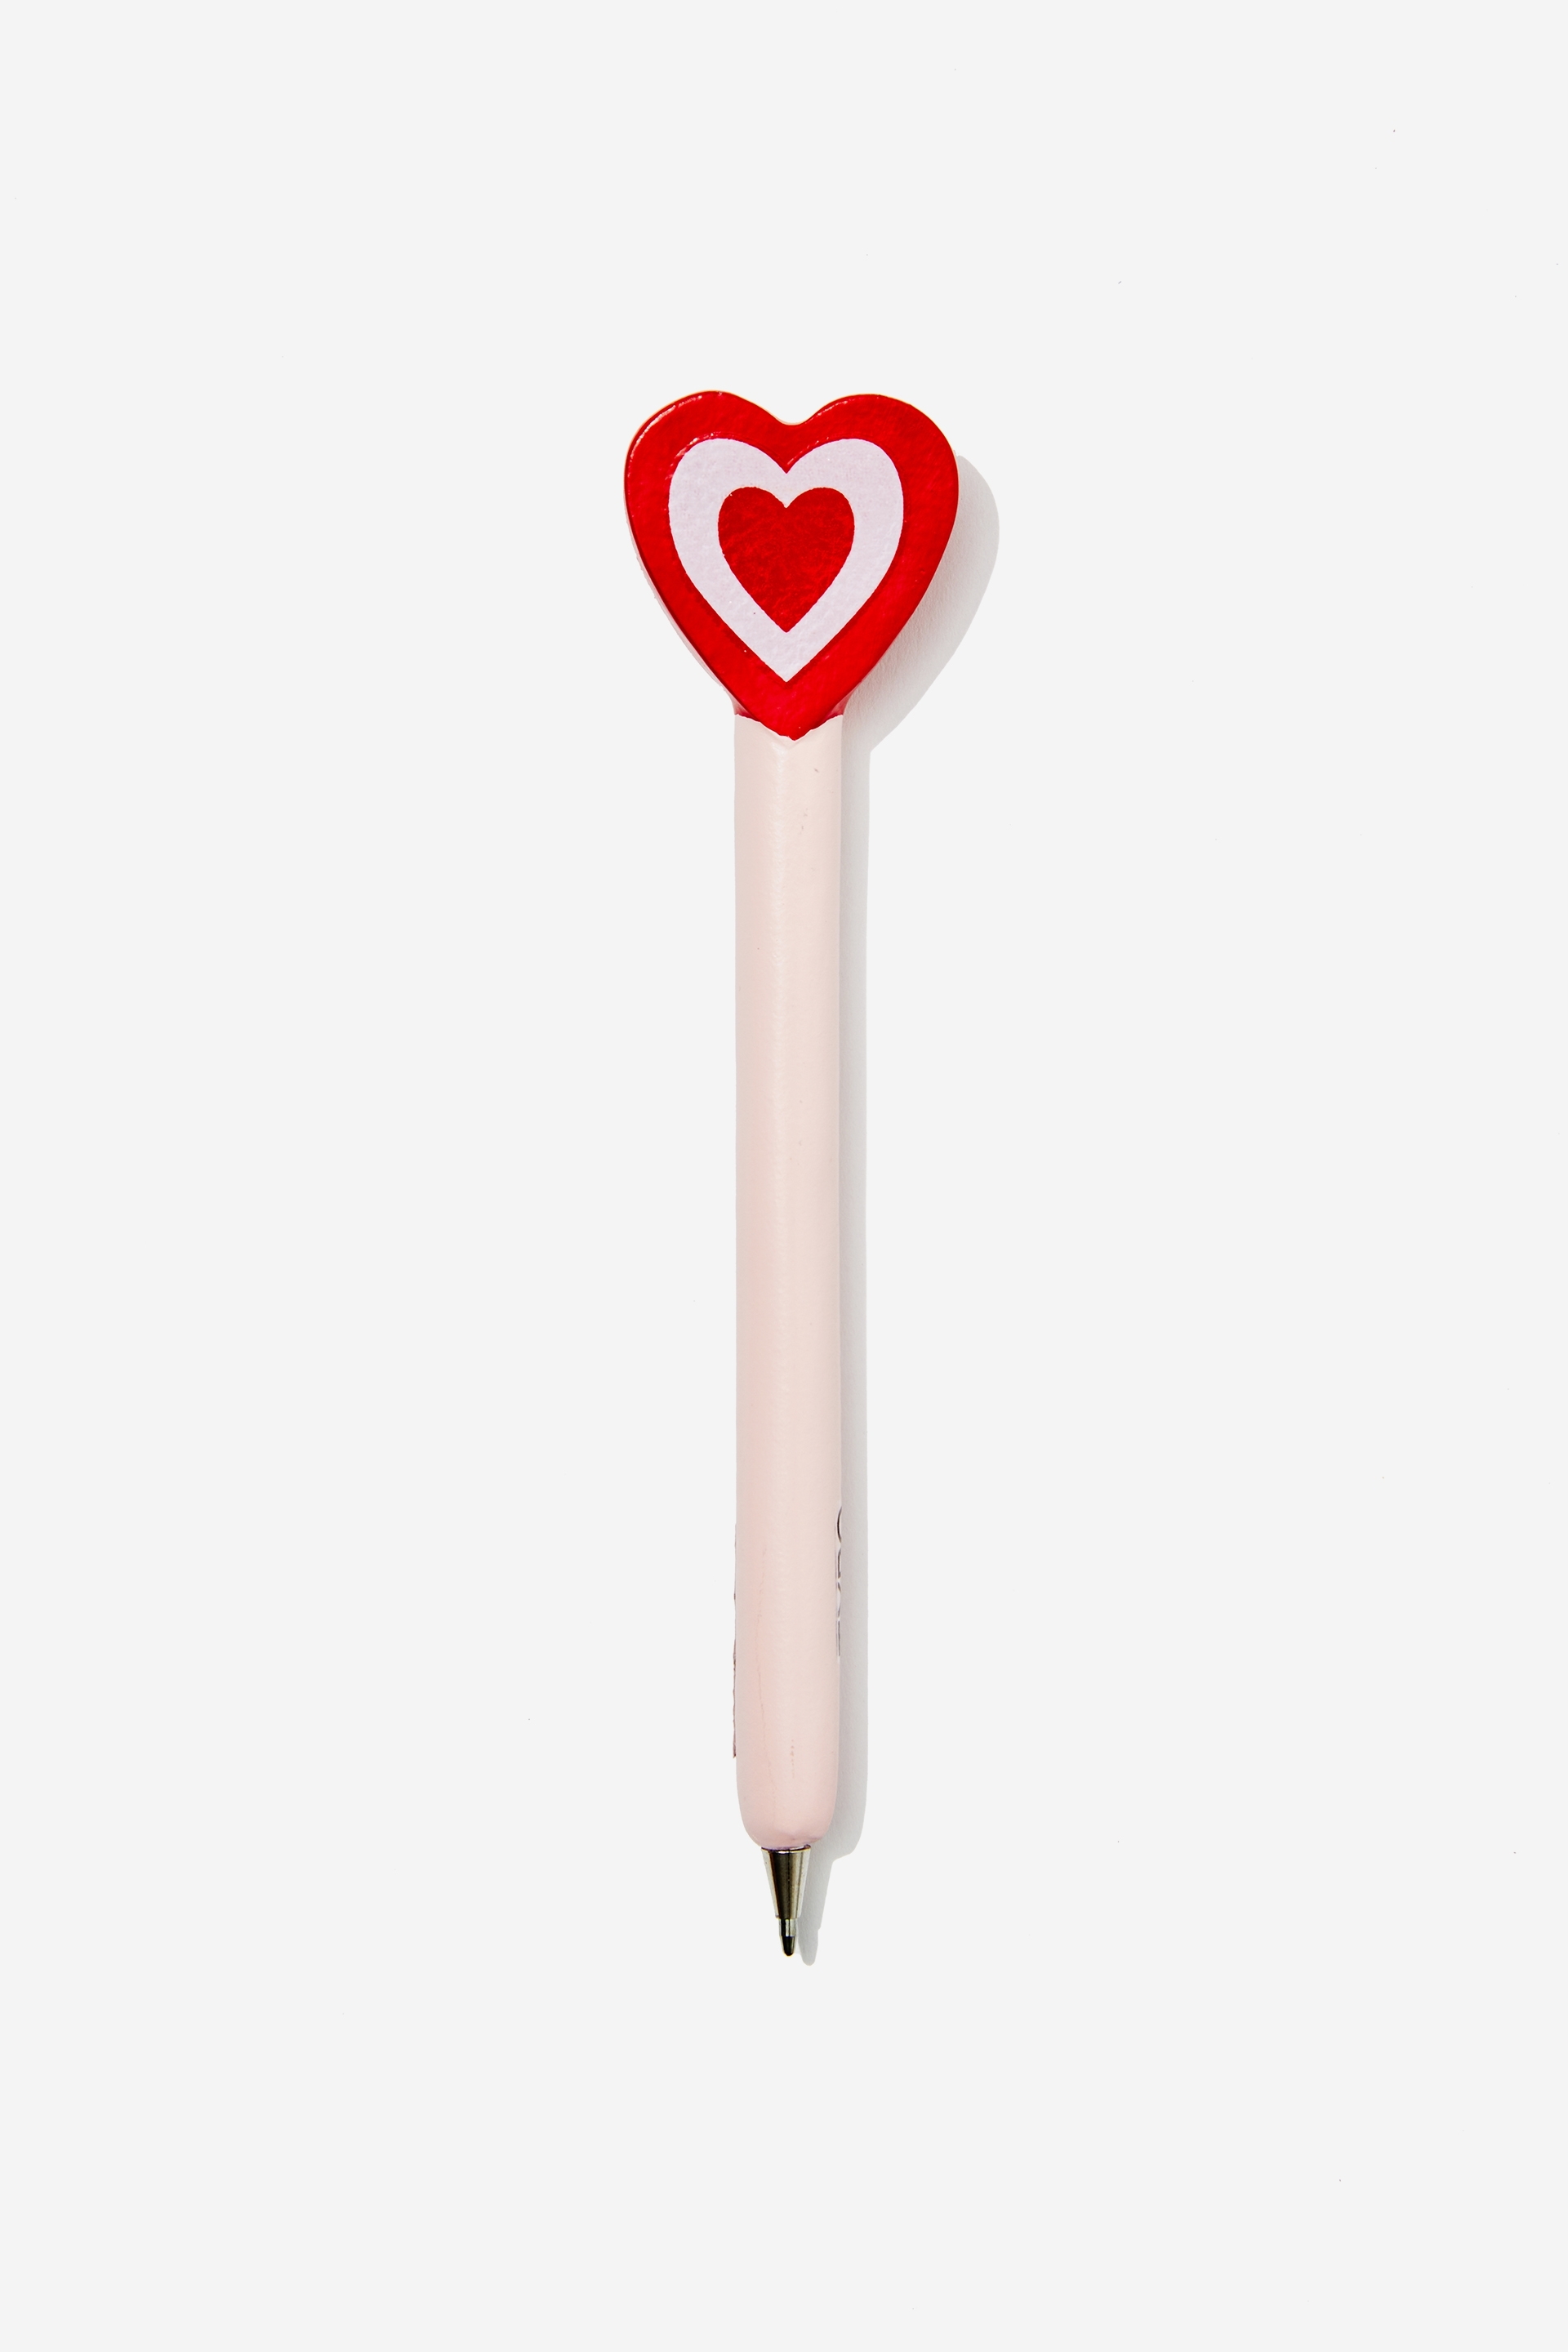 Typo - The Novelty Pen - Heart